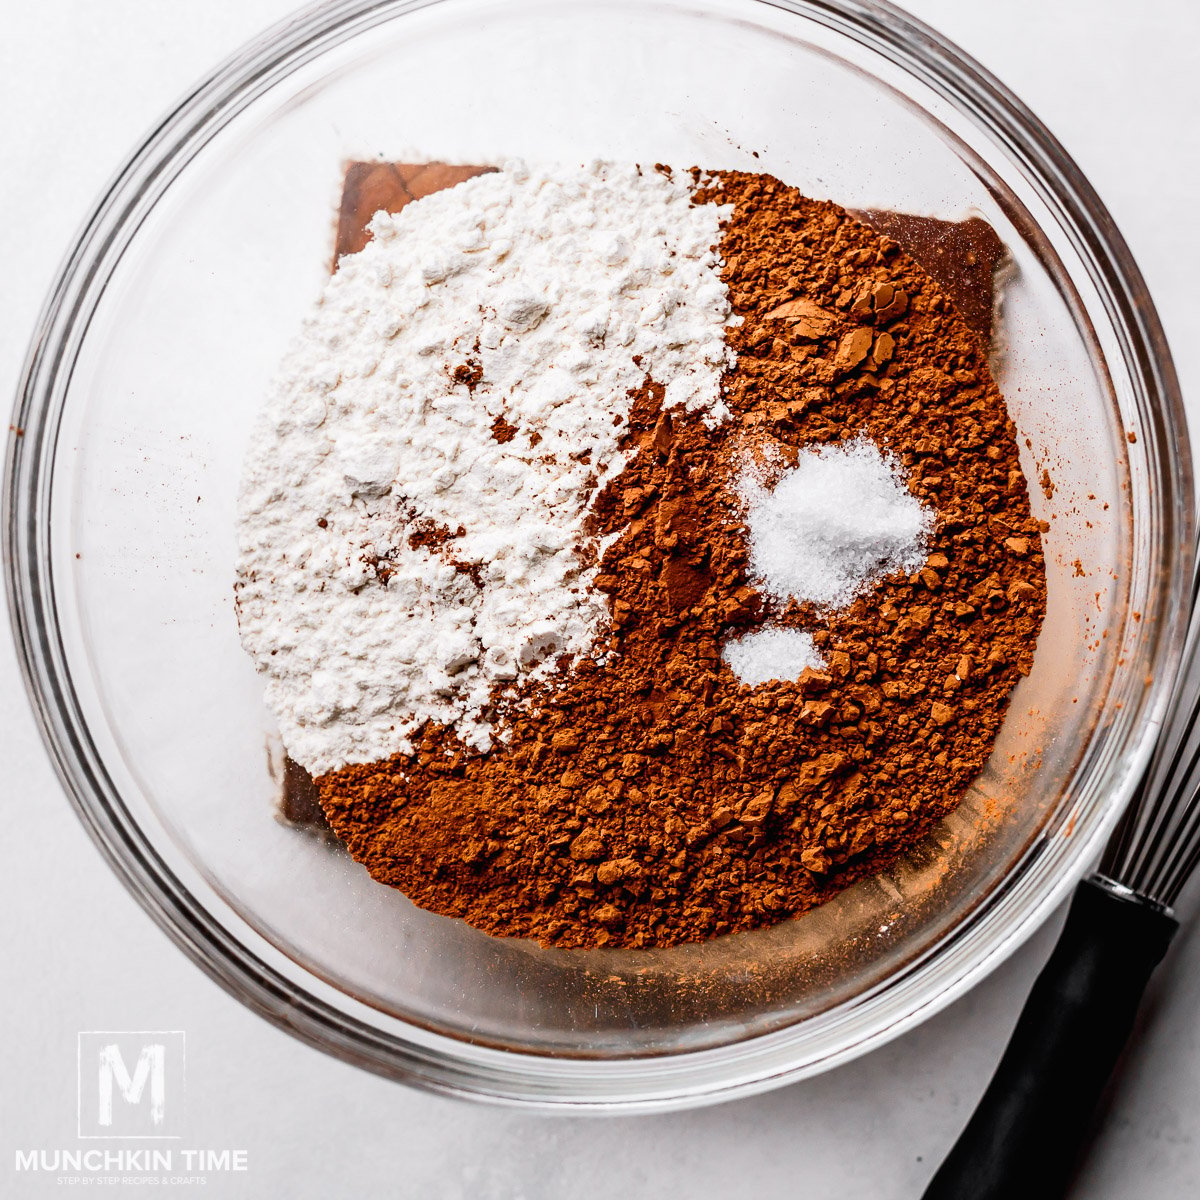 Flour and coca inside the bowl.